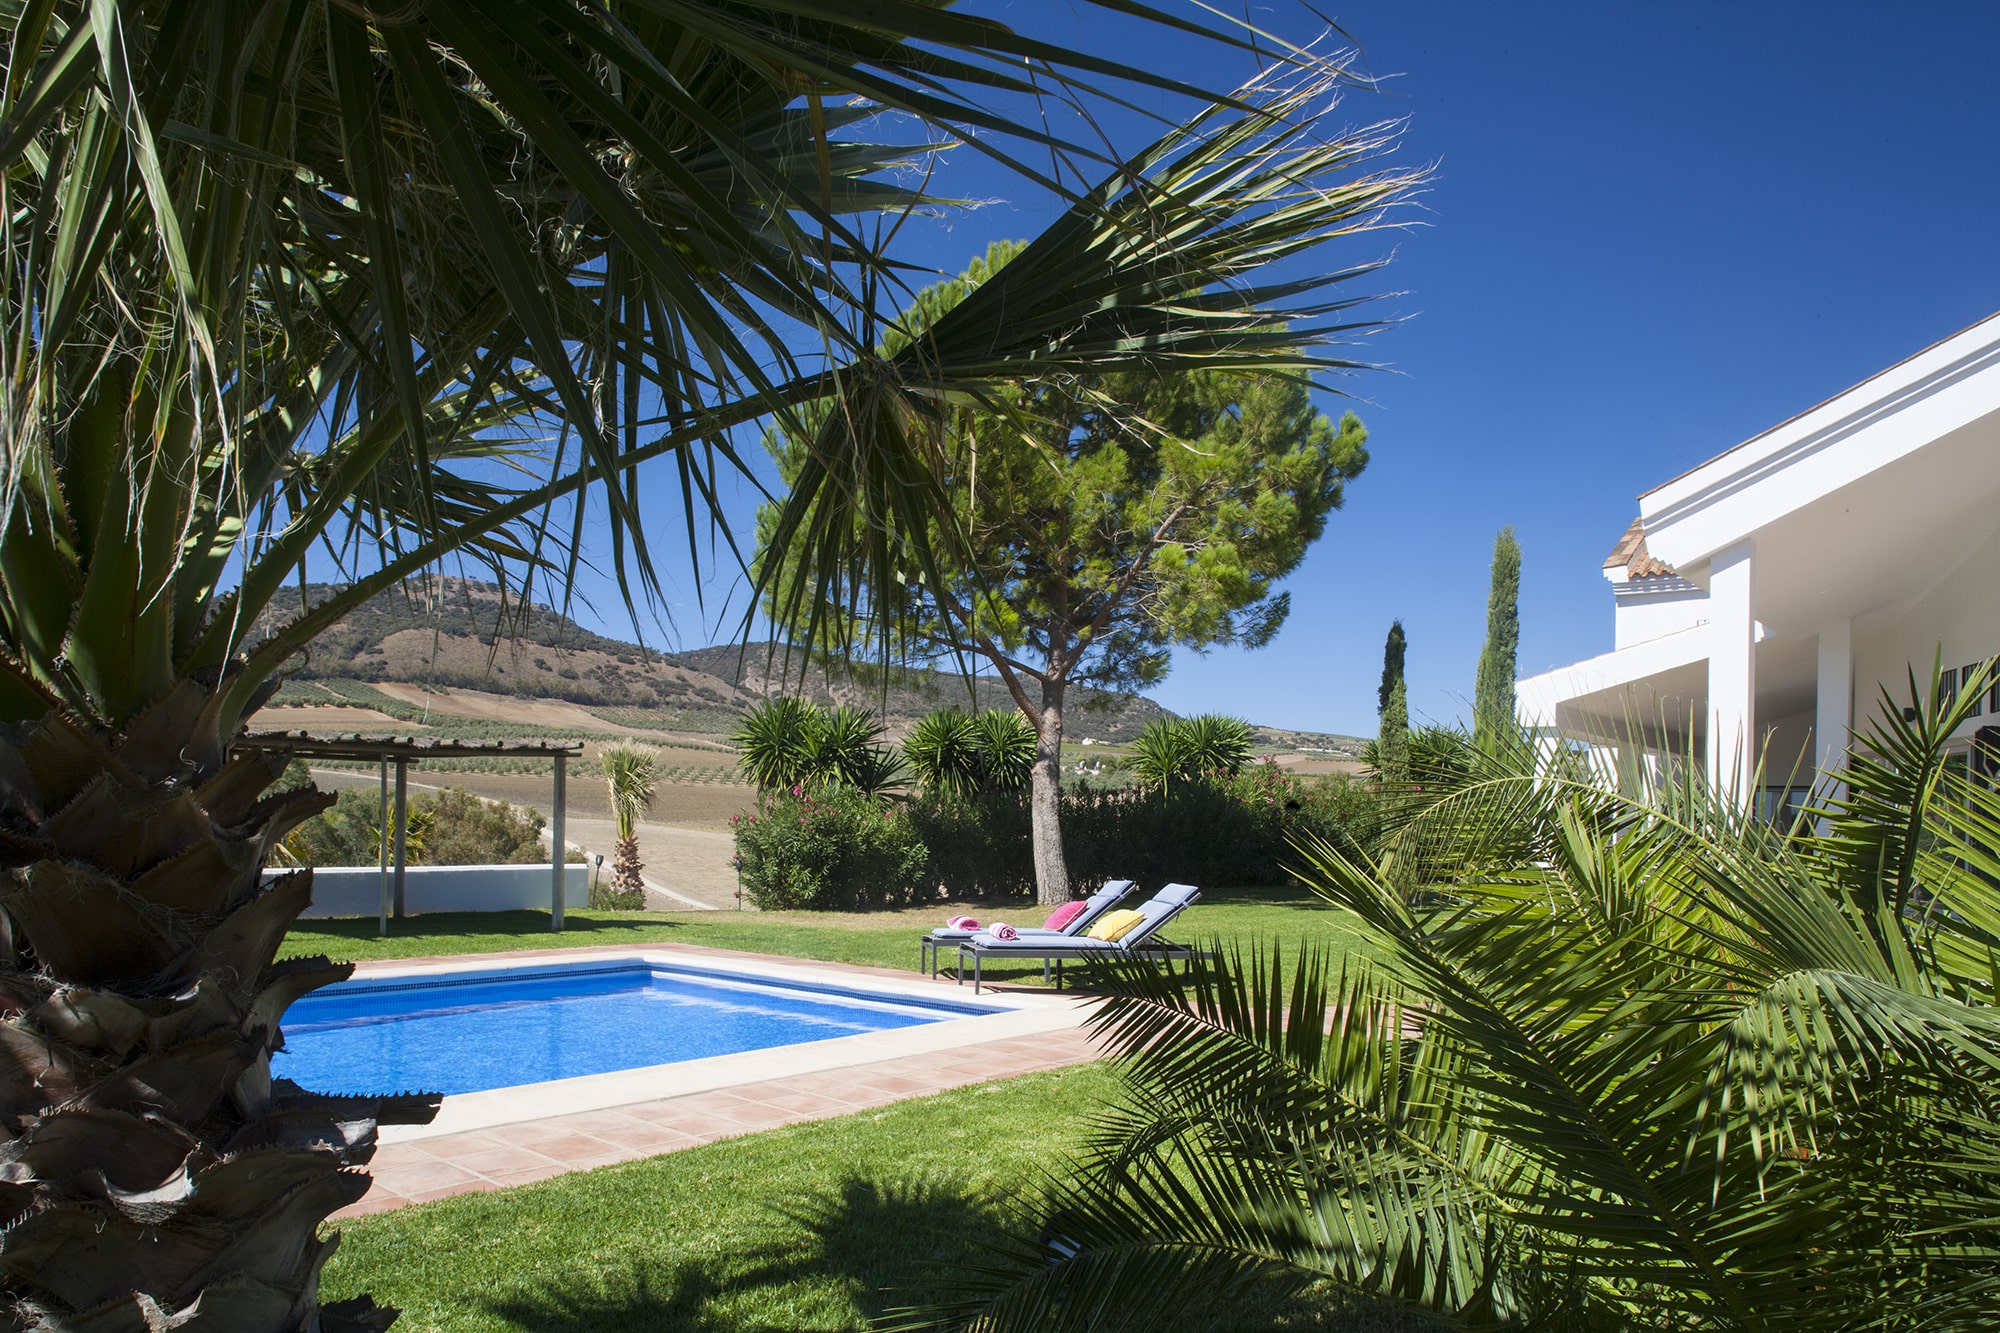 villas andalucia pool and garden